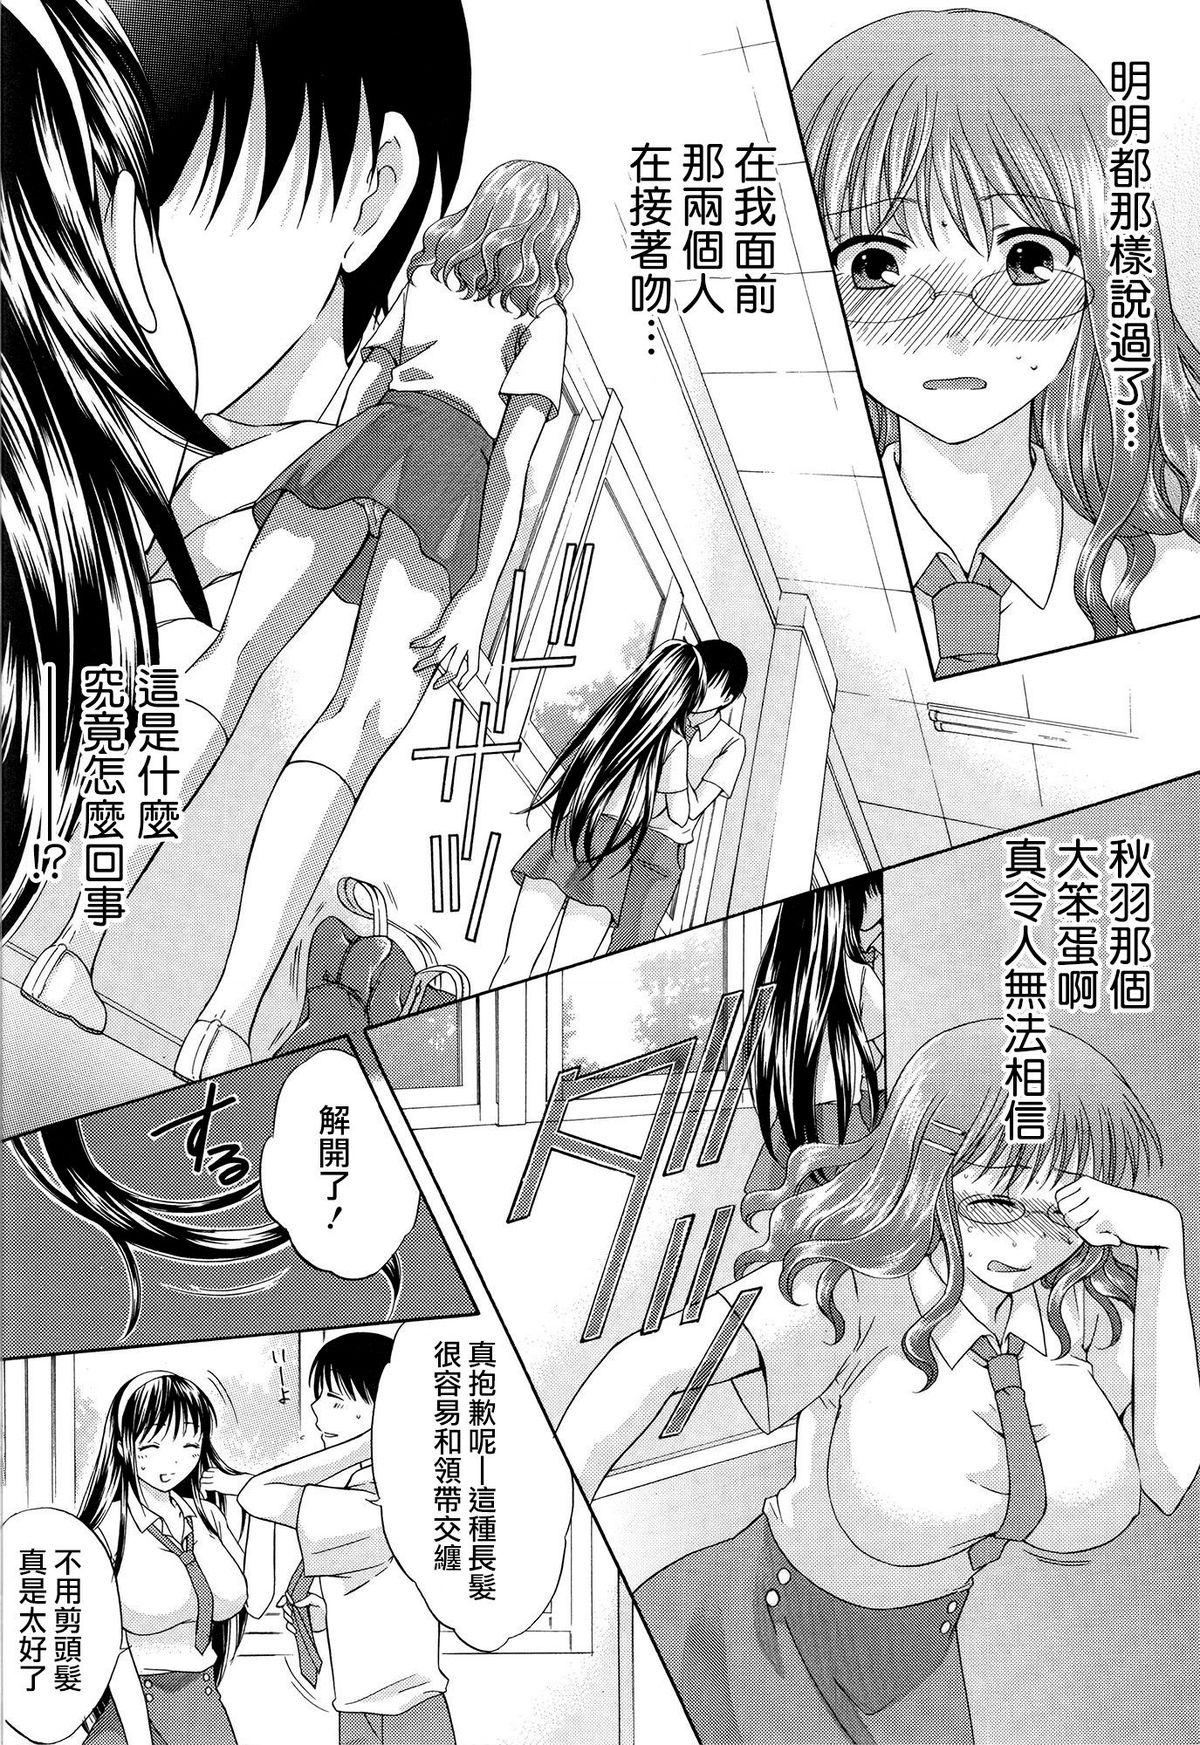 Teenage Hachigatu, Kanojo wa Uso wo tsuku. Bdsm - Page 9